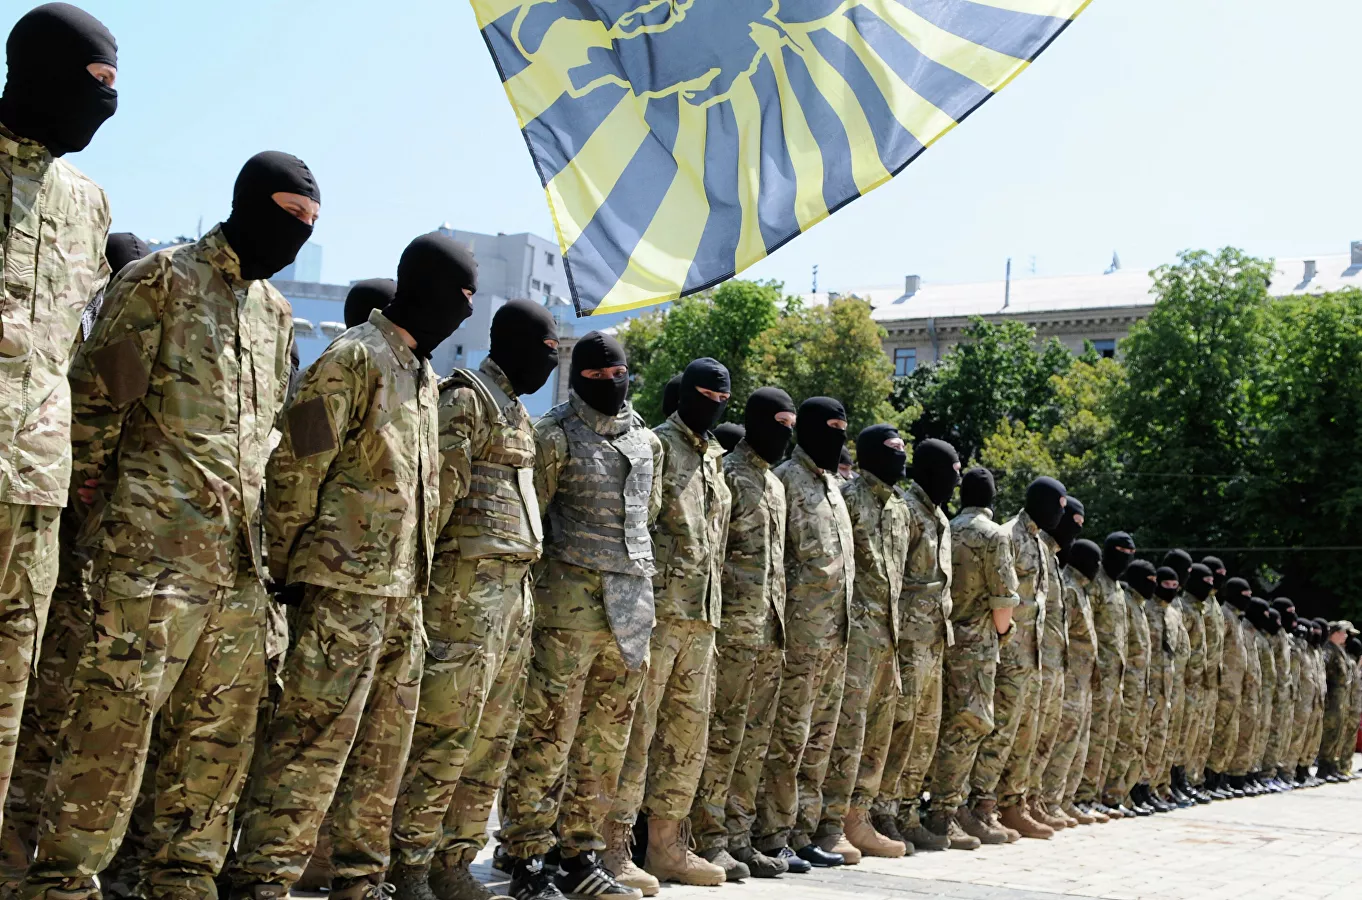  Exoficial de inteligencia de EEUU: los neonazis ucranianos arruinaron los acuerdos de Minsk